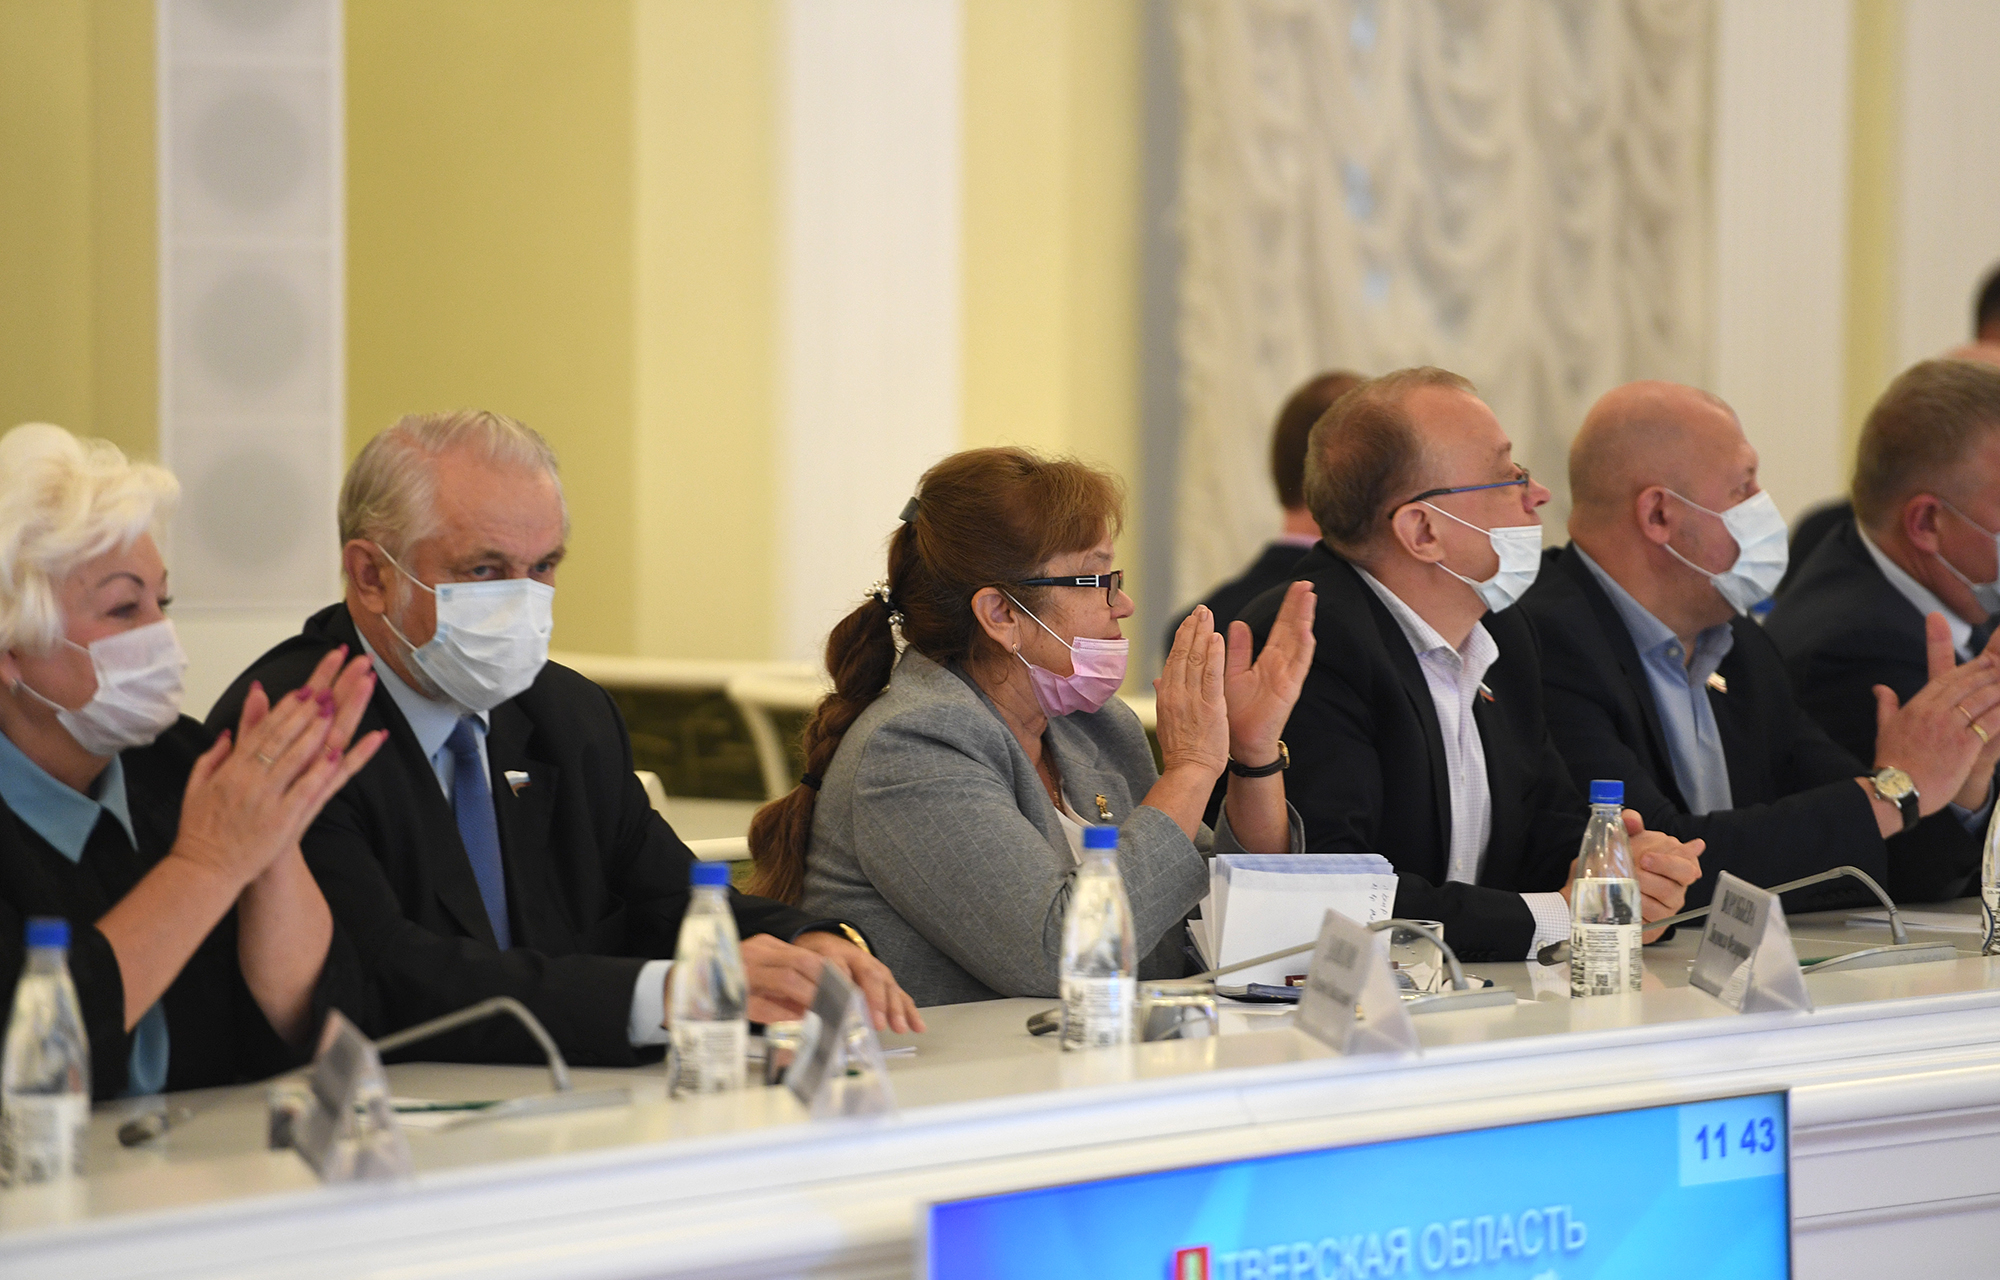 Губернатор Игорь Руденя поблагодарил депутатов шестого созыва регионального ЗакСобрания за совместную пятилетнюю работу